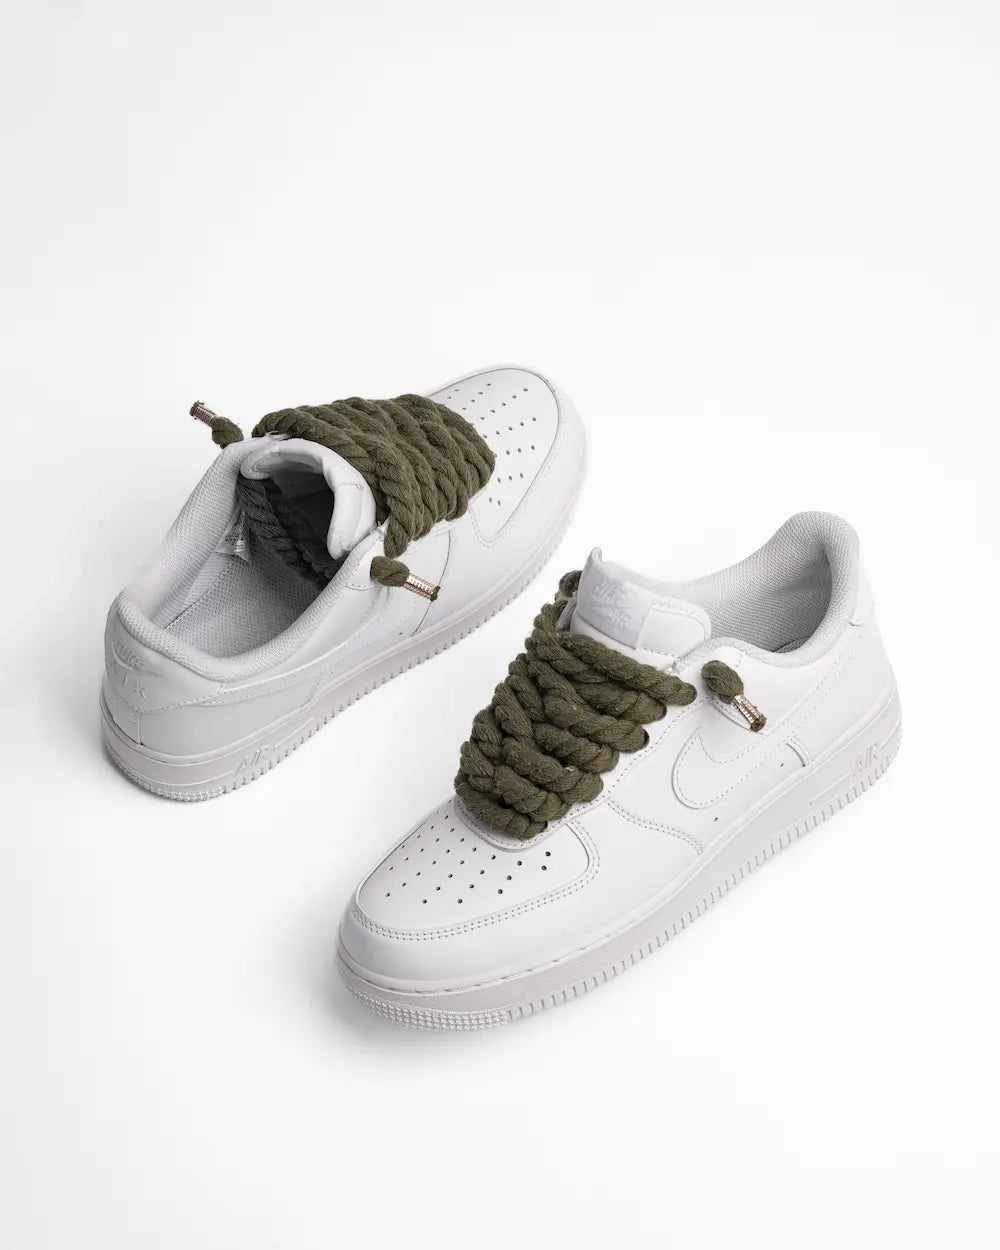 Nike Air Force 1 bianca personalizzata con lacci in corda verde scuro